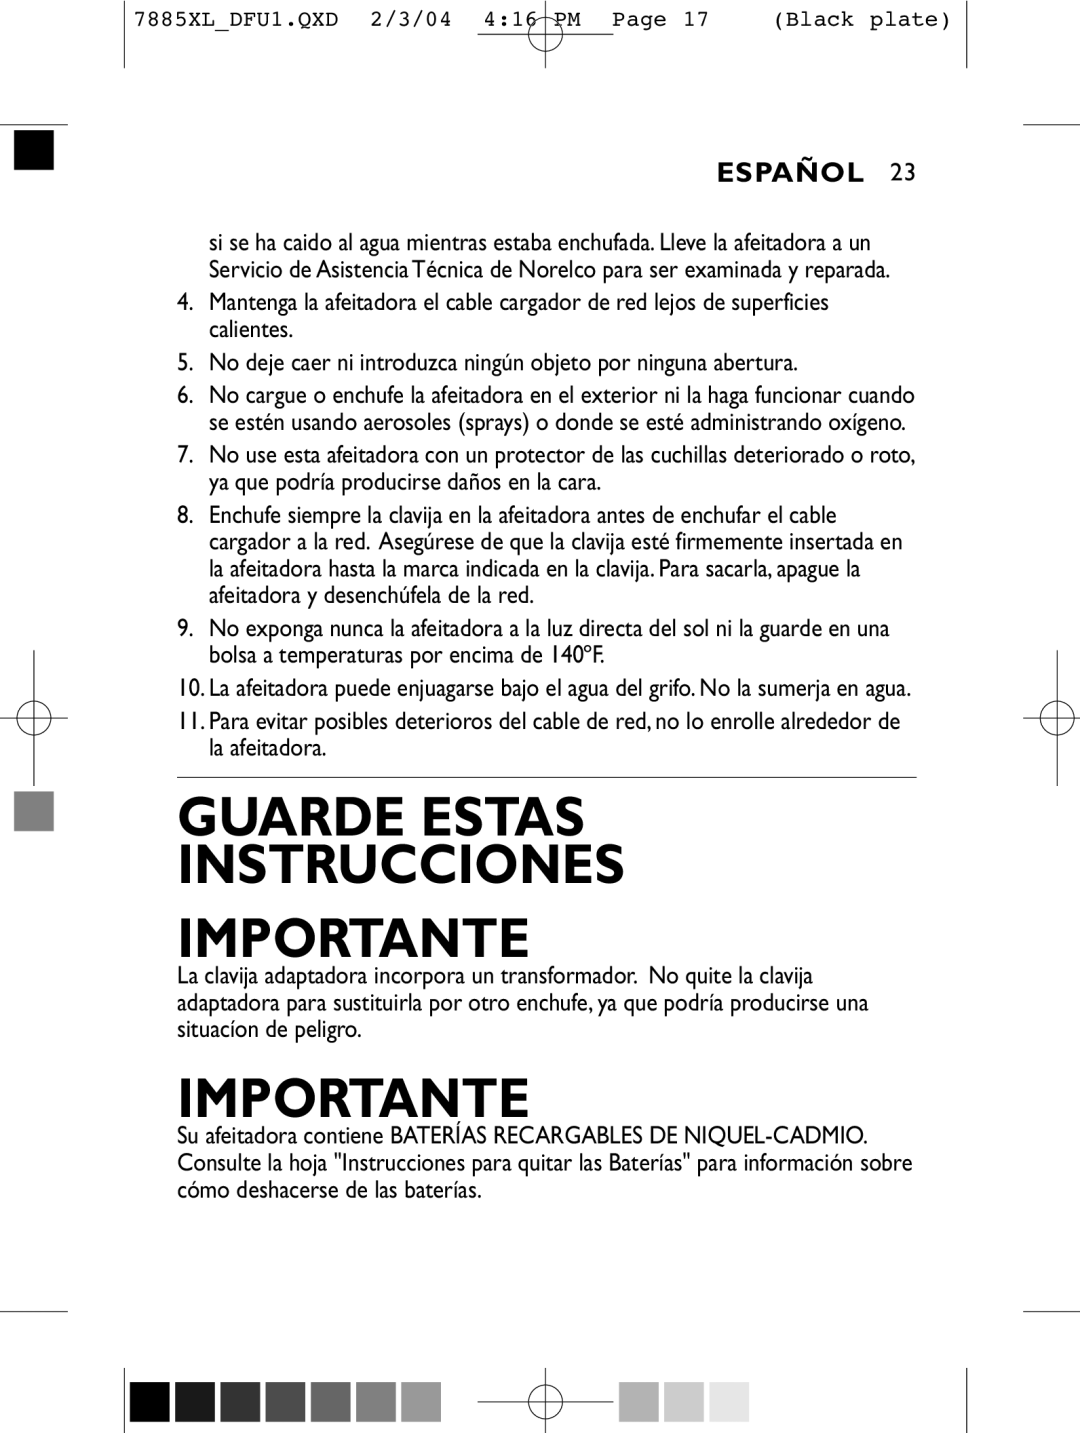 Philips 6886XL, 6887XL, 6885XL, 7885XL, 7886XL manual Guarde Estas Instrucciones Importante, Español 